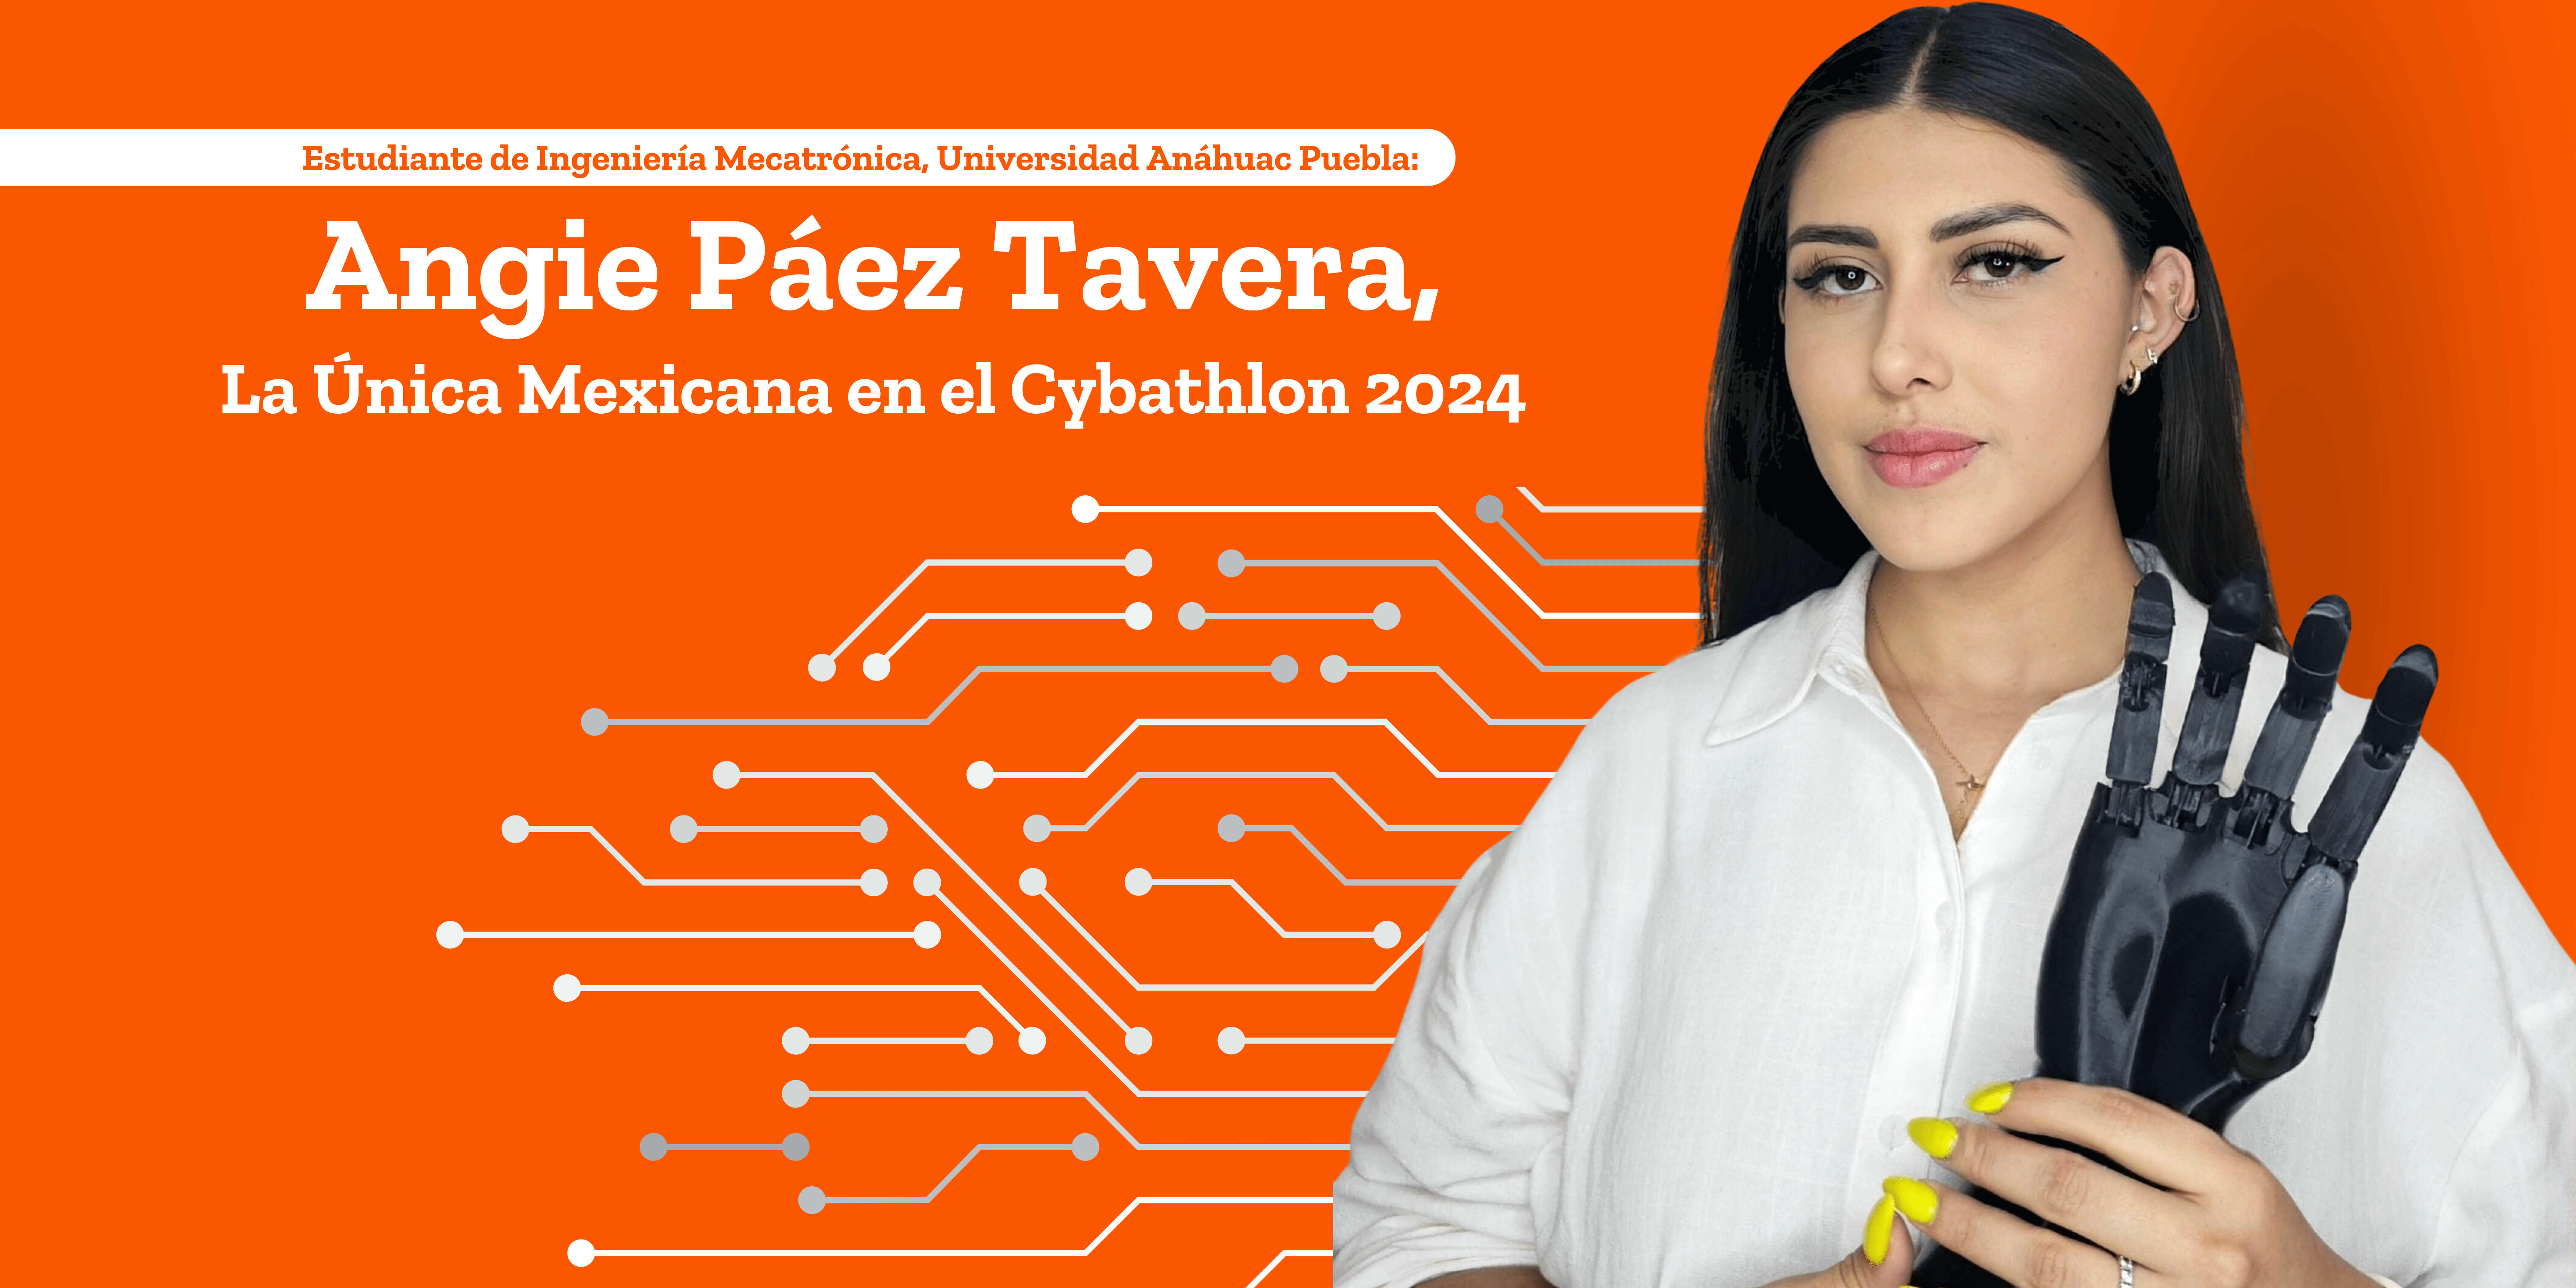 Angie Páez Tavera: La Única Mexicana en el Cybathlon 2024